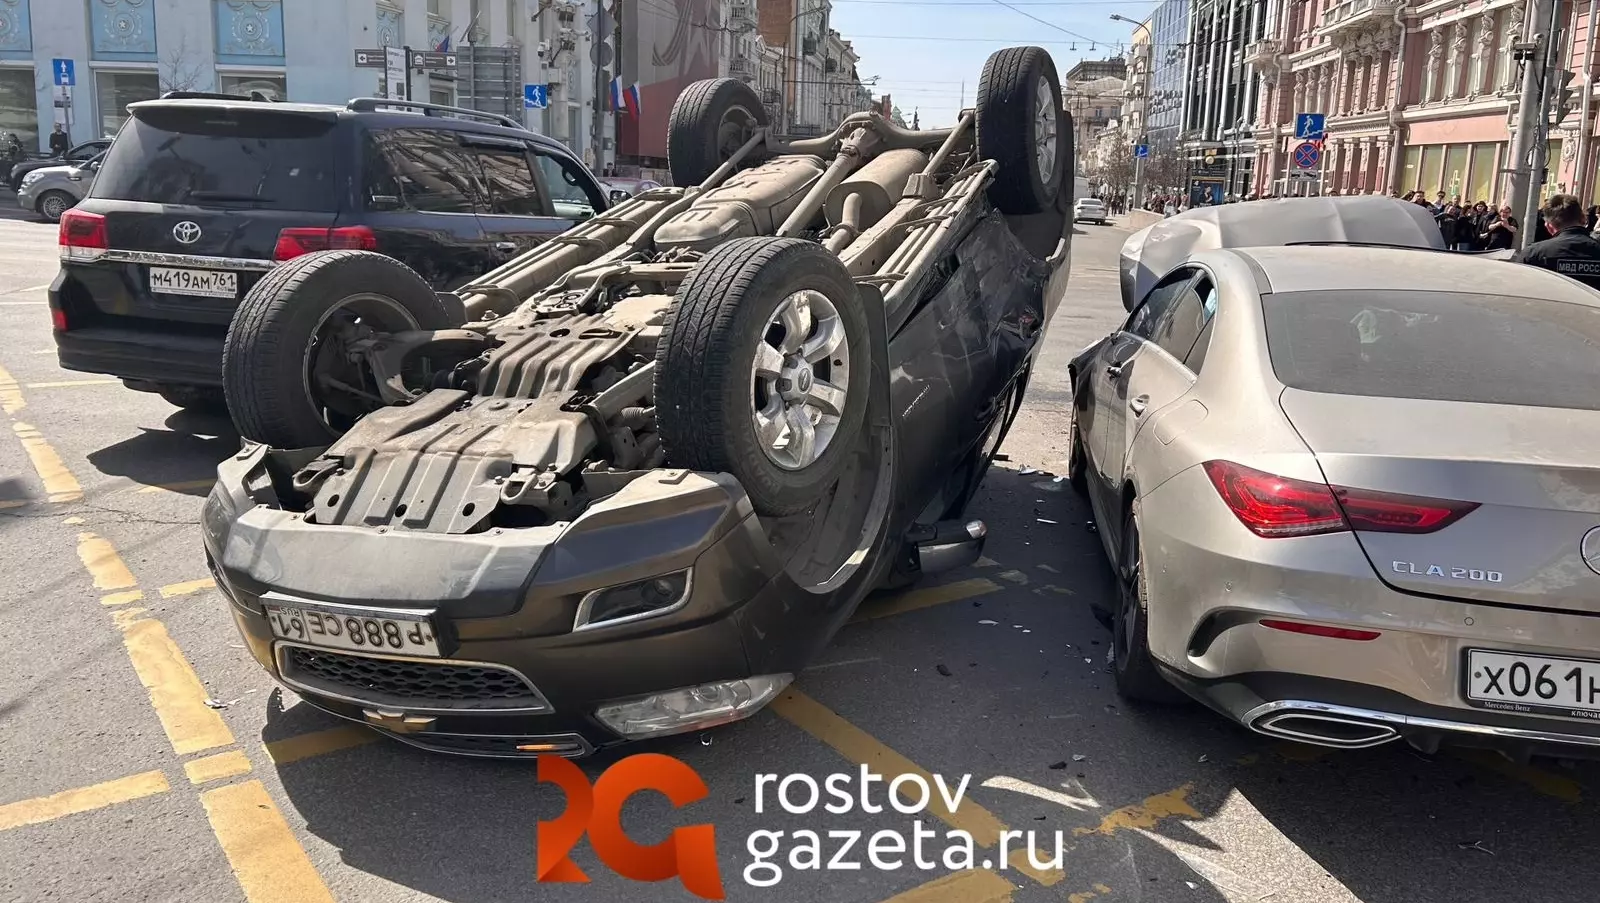 Жесткая авария с троллейбусом произошла у здания правительства Ростовской области